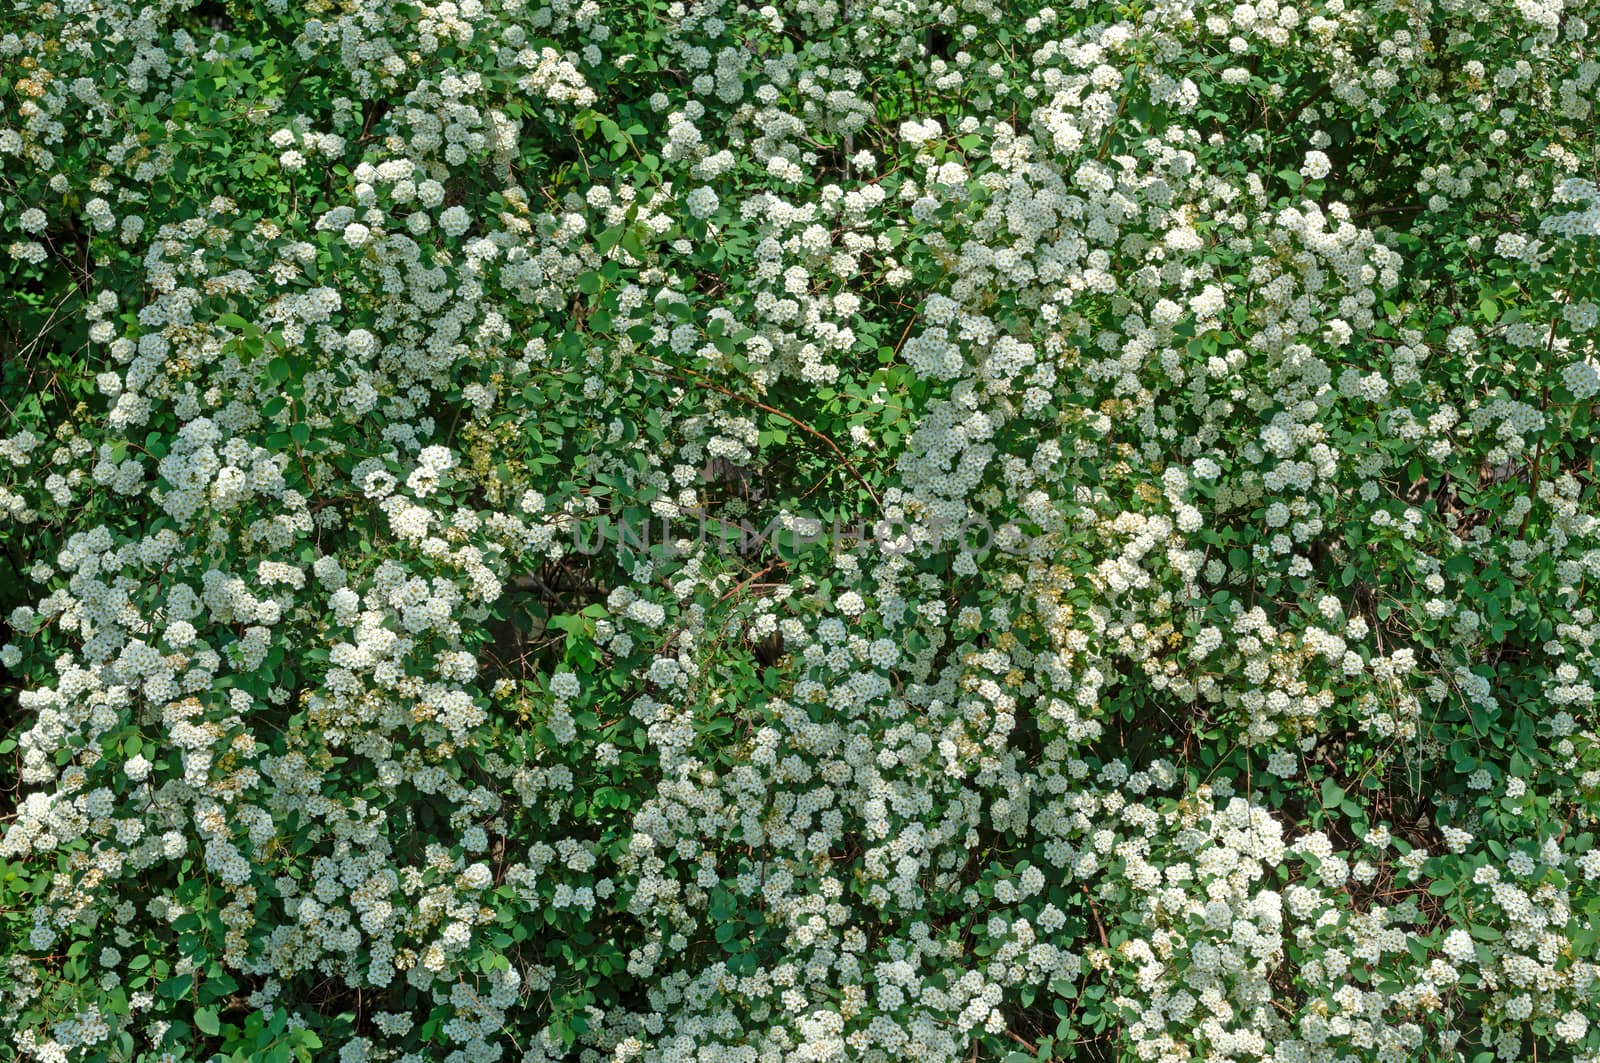 Spiraea alpine spring flower - white flowering shrub.Green bushe by DNKSTUDIO